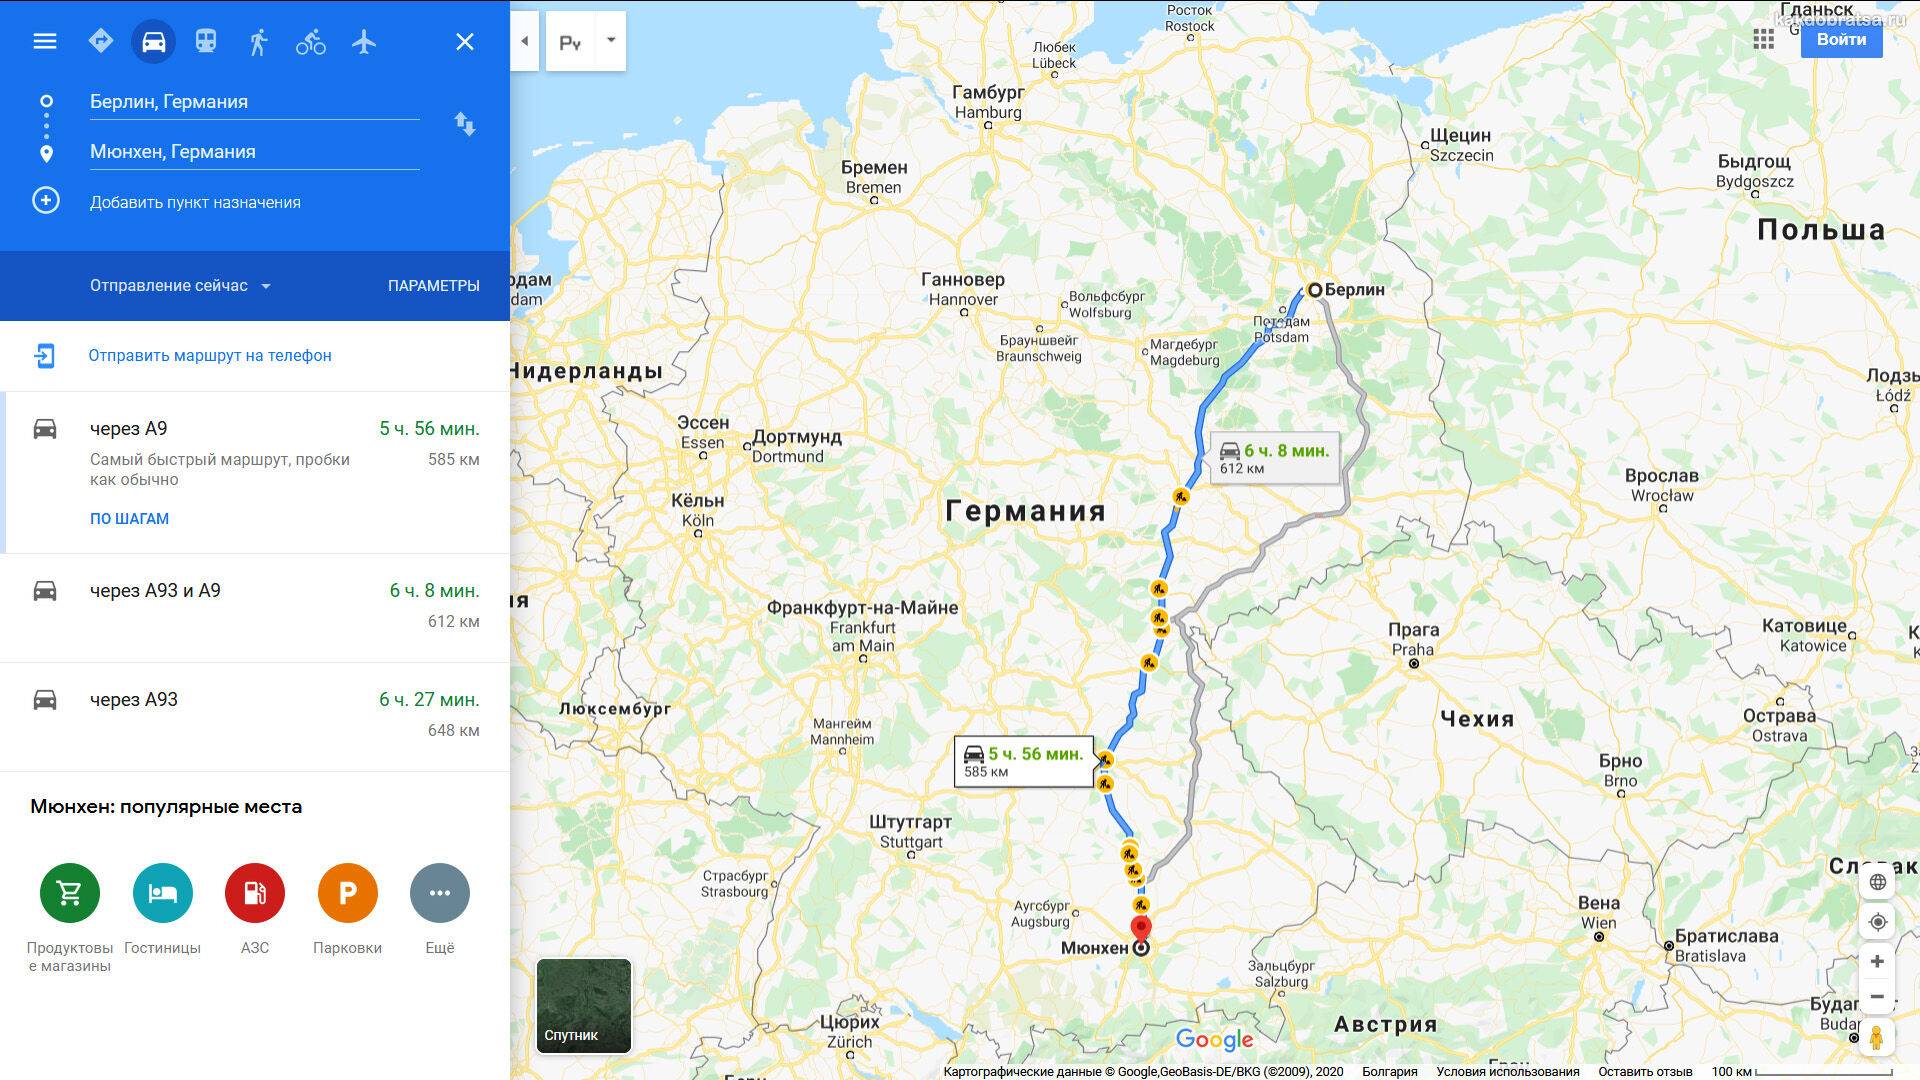 Как добраться из берлина в ганновер: поезд, автобус, такси, машина. расстояние, цены на билеты и расписание 2021 на туристер.ру